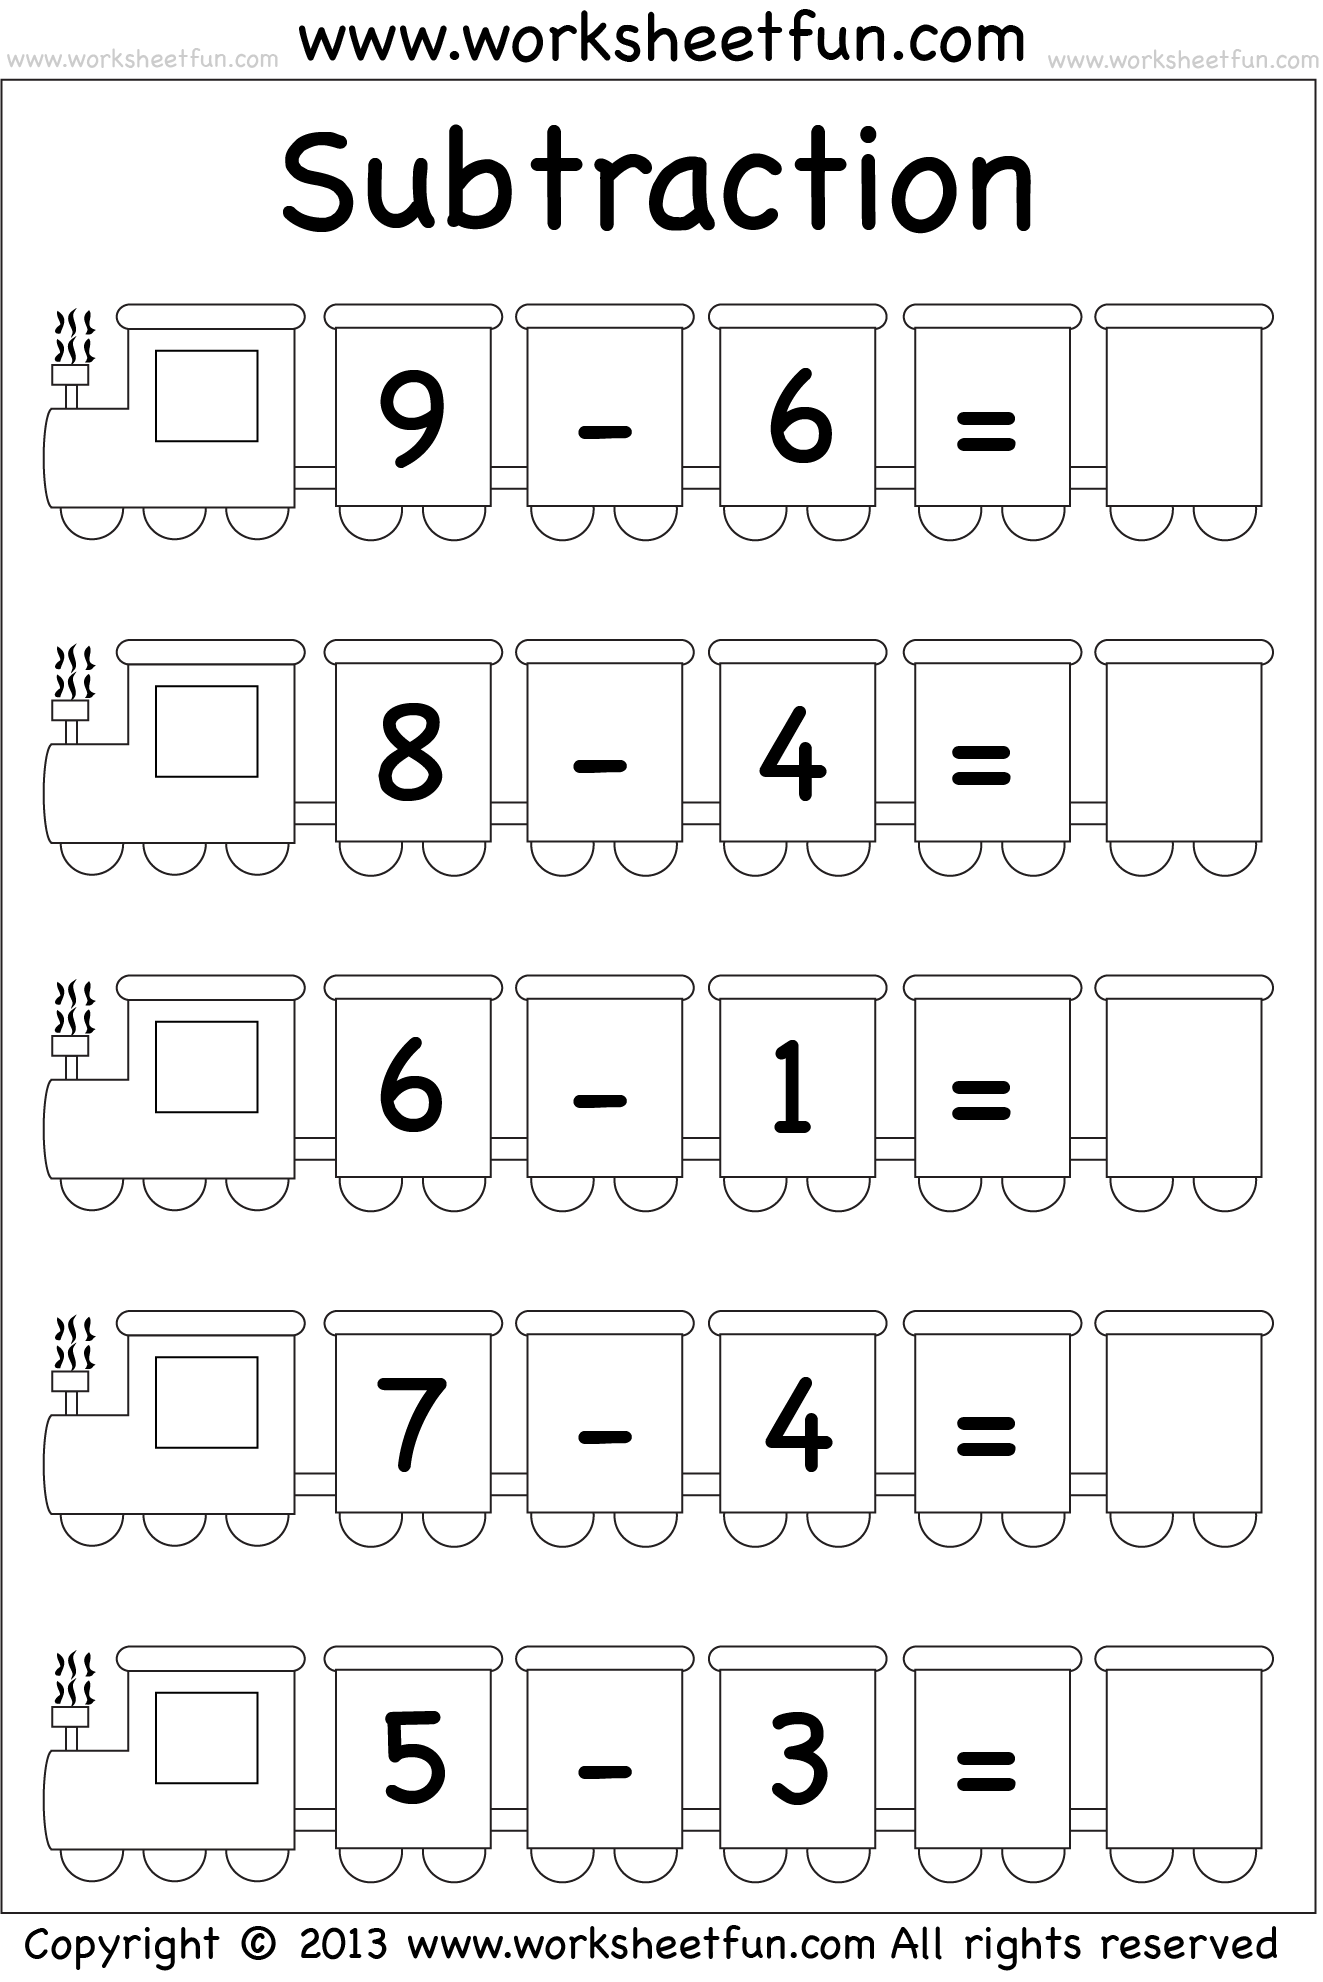 Free Kindergarten Subtraction Worksheet Kindermommacom Math Subtraction Worksheet Free